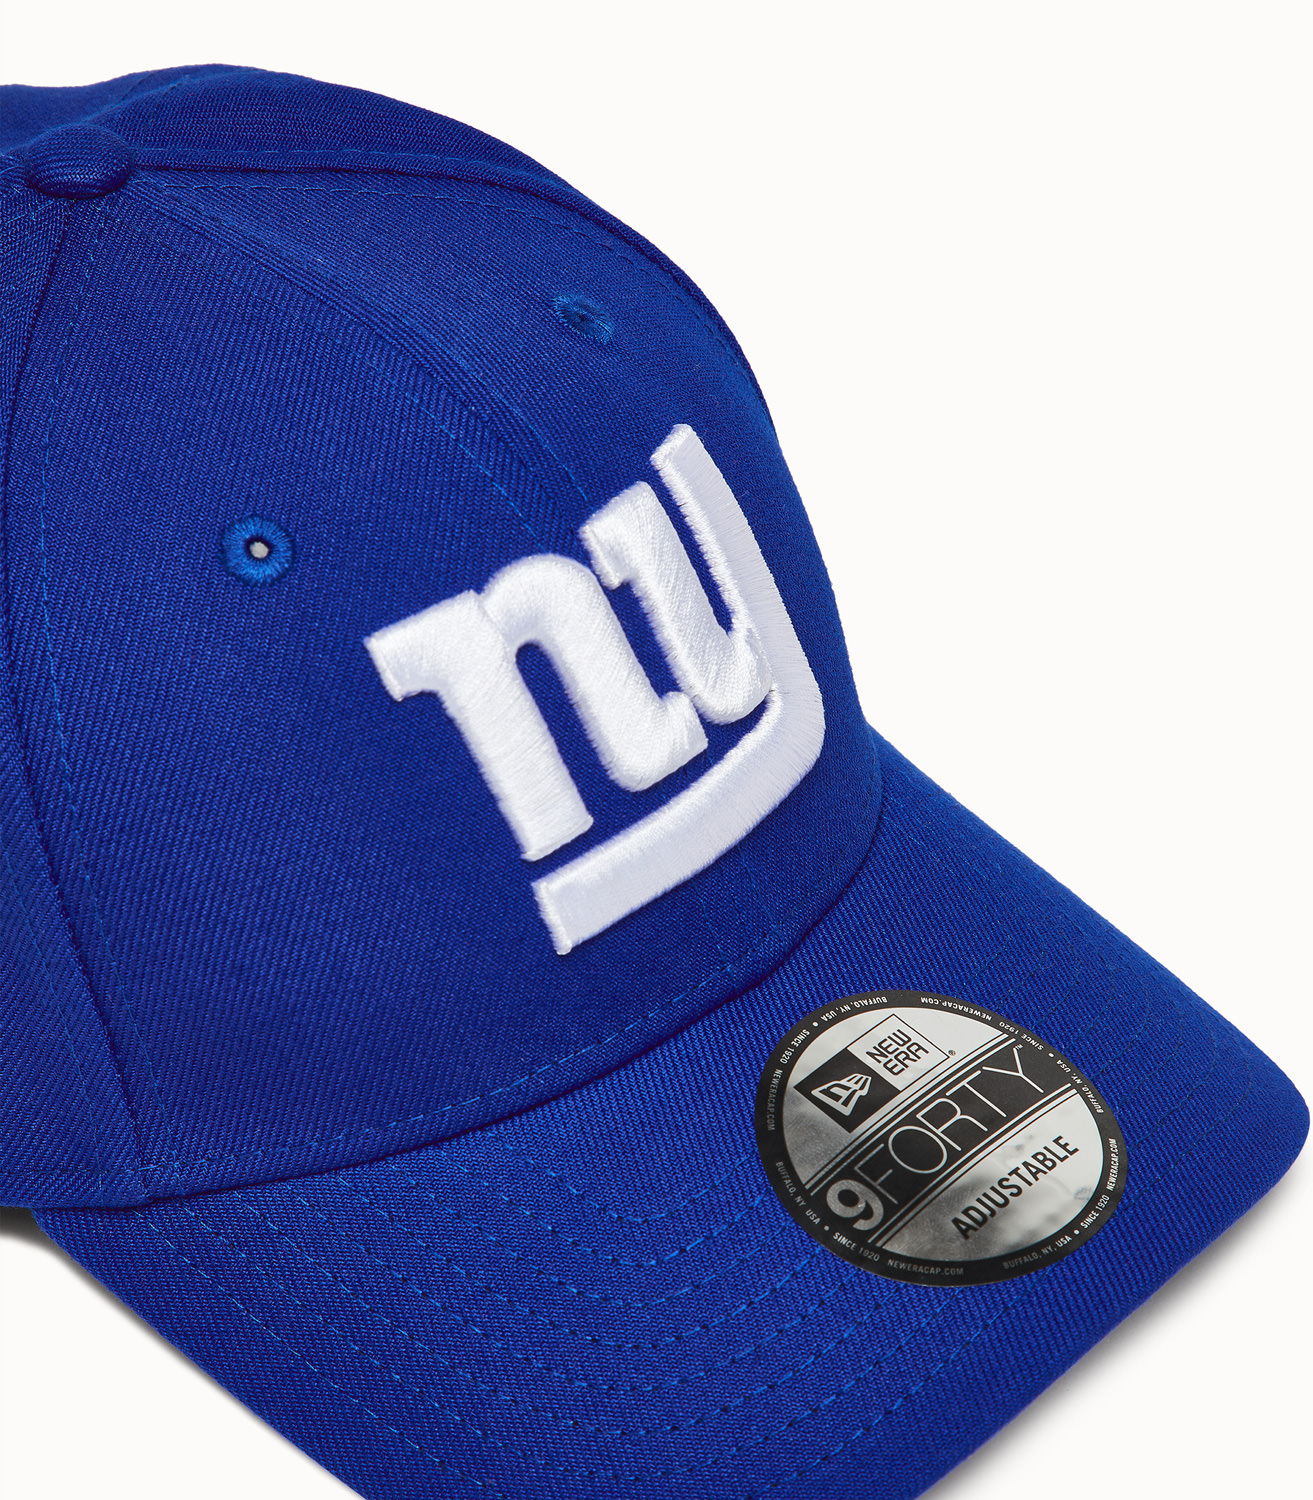 New York Giants Baseball Apparel Store